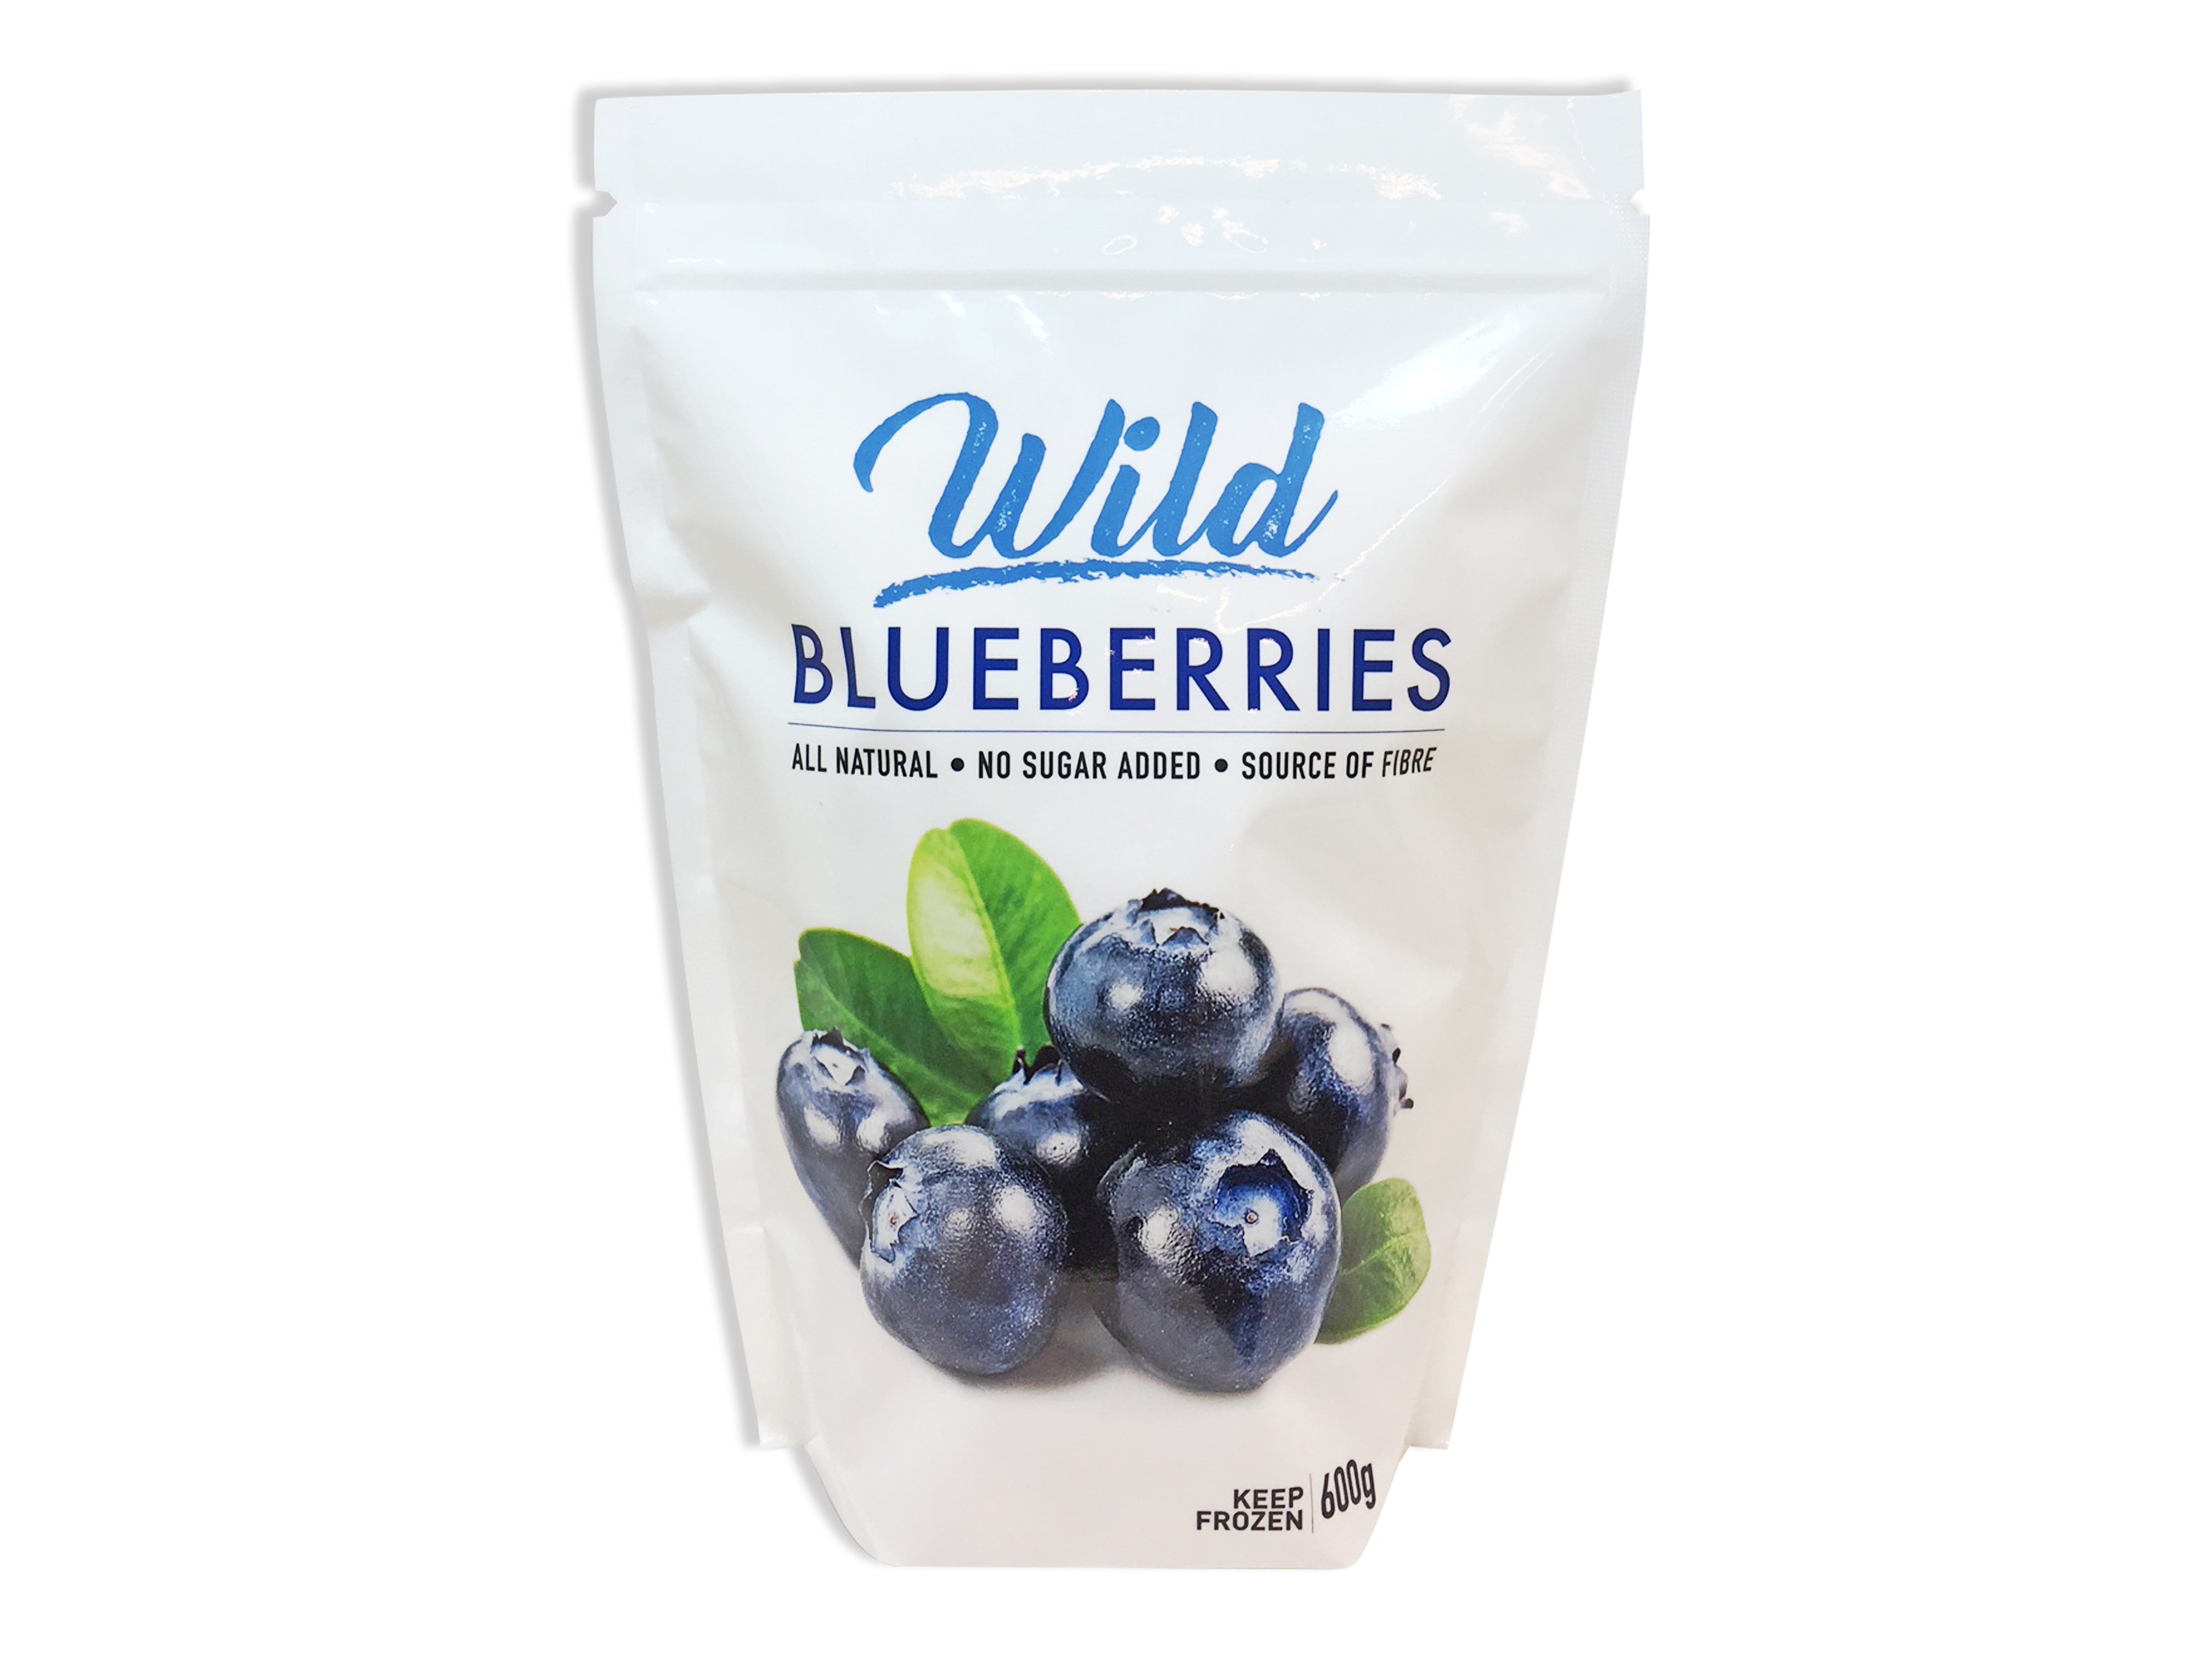 https://0901.nccdn.net/4_2/000/000/06c/bba/Wild-blueberries-4032x3024.jpg